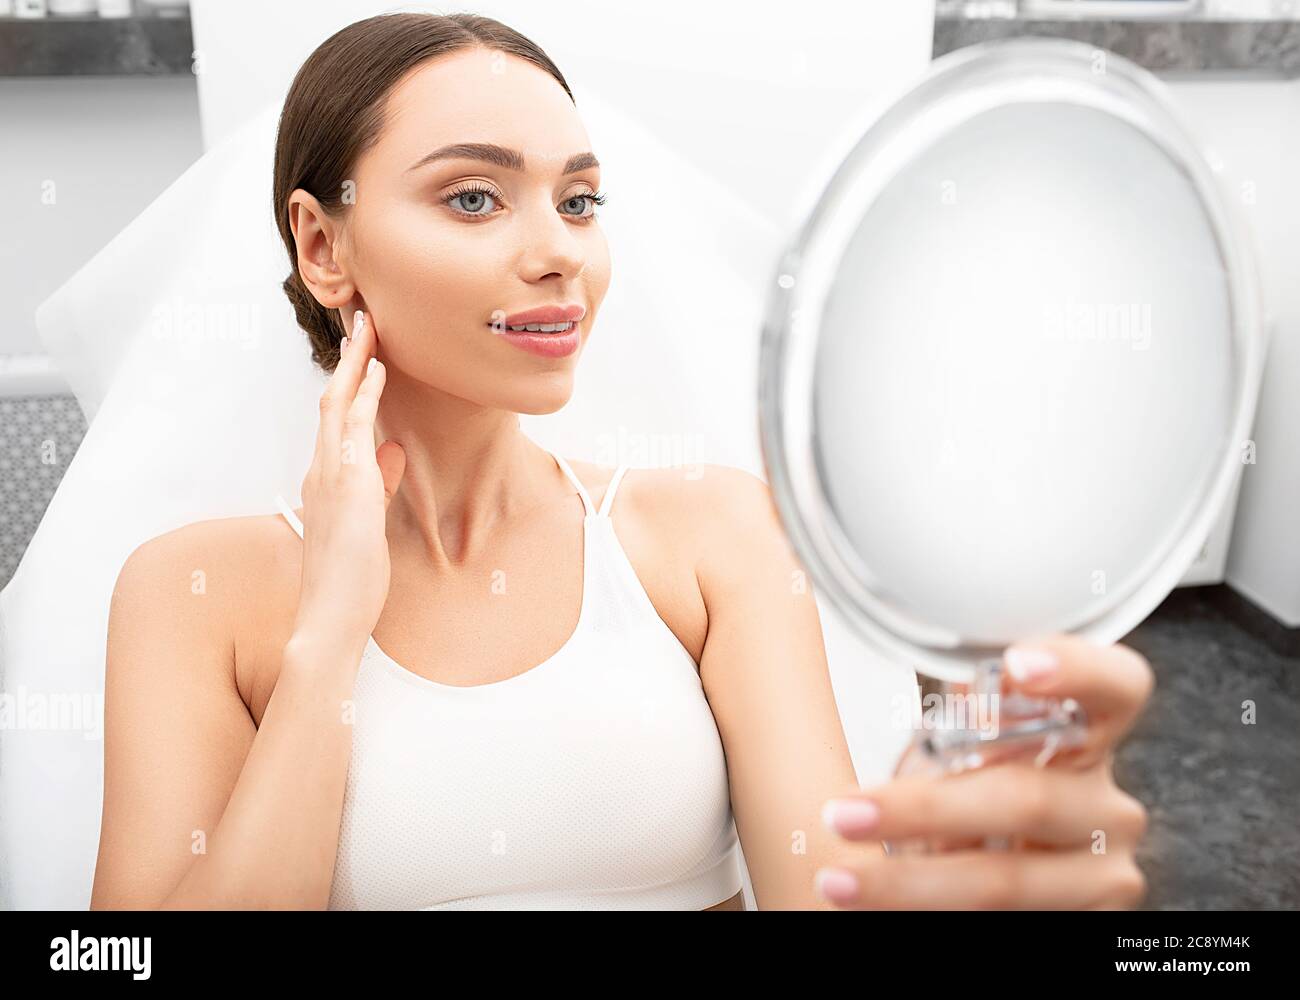 Una bella donna con una pelle fresca del viso guarda nello specchio mentre si siede nell'ufficio estetista. Cosmetologia e trattamento della pelle, bella salute Foto Stock